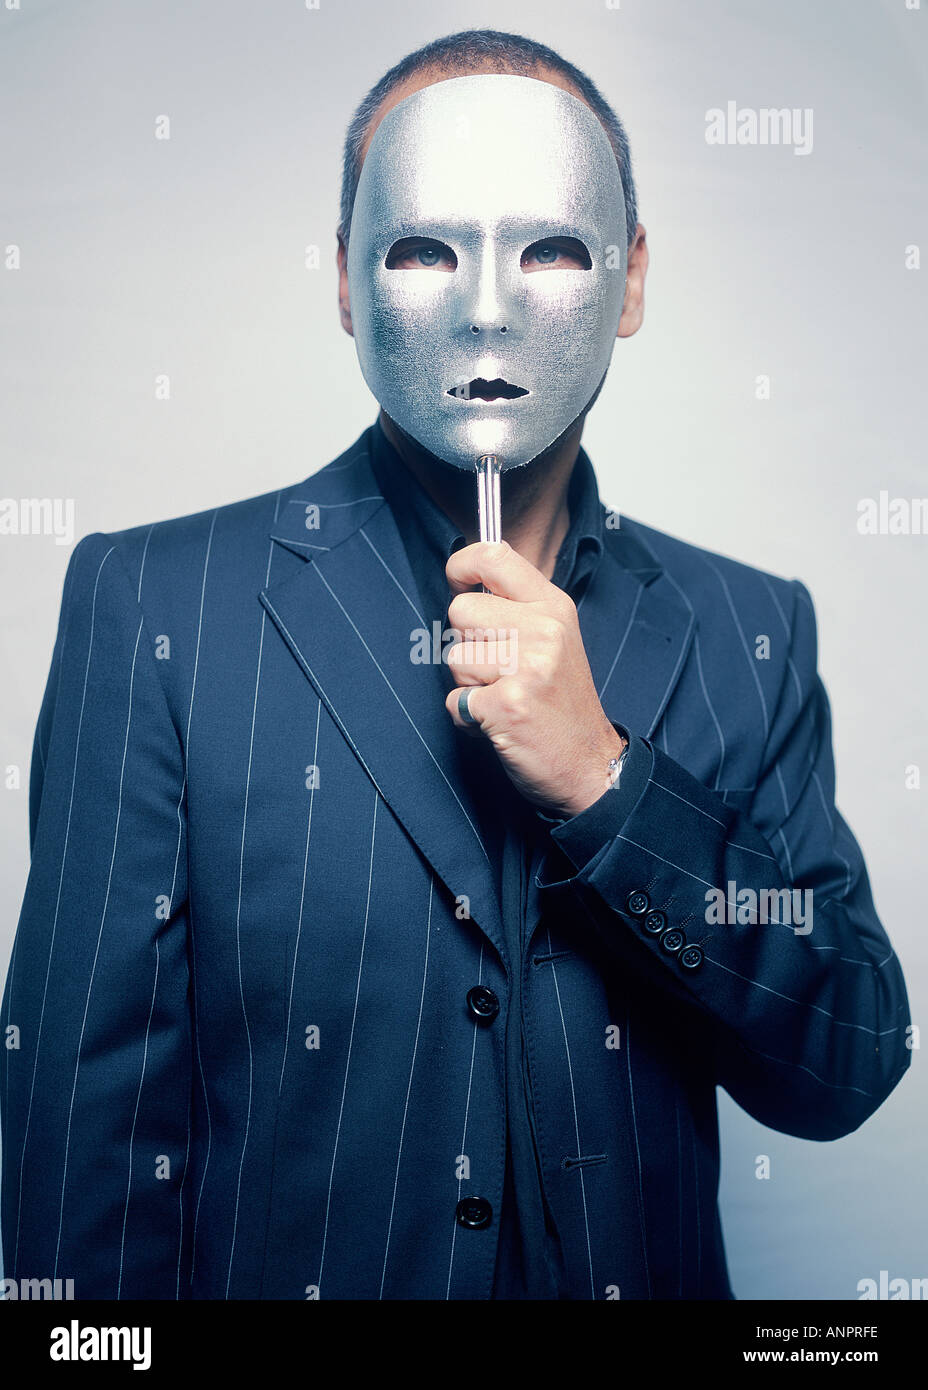 Gangster mit einer Maske Stockfotografie - Alamy